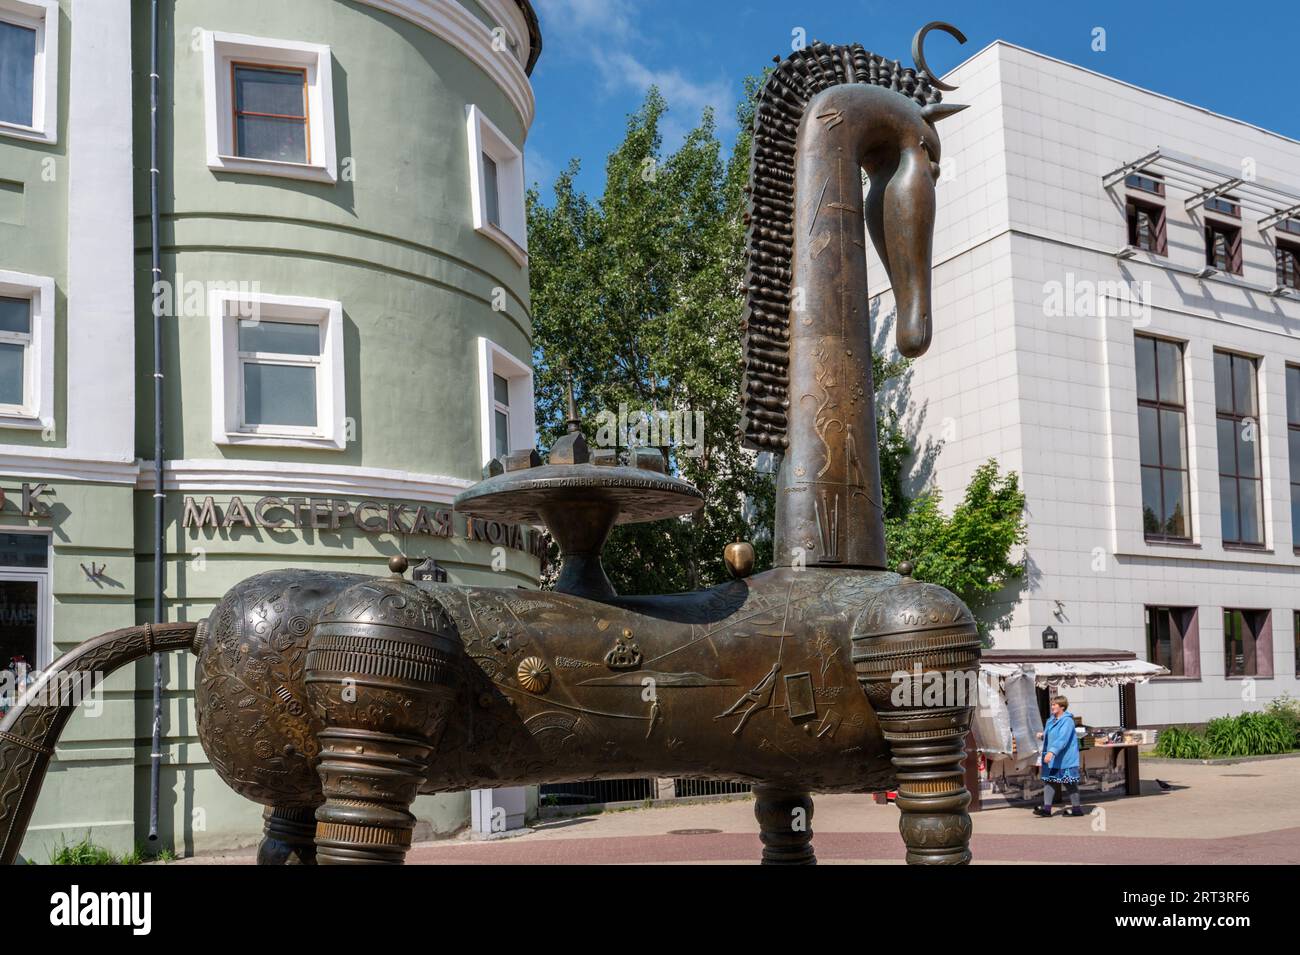 KAZAN, RUSSIA - 1 GIUGNO: Un frammento della scultura Horse Country in via Bauman a Kazan all'ingresso della stazione della metropolitana Moskovskaya. Primo piano Foto Stock